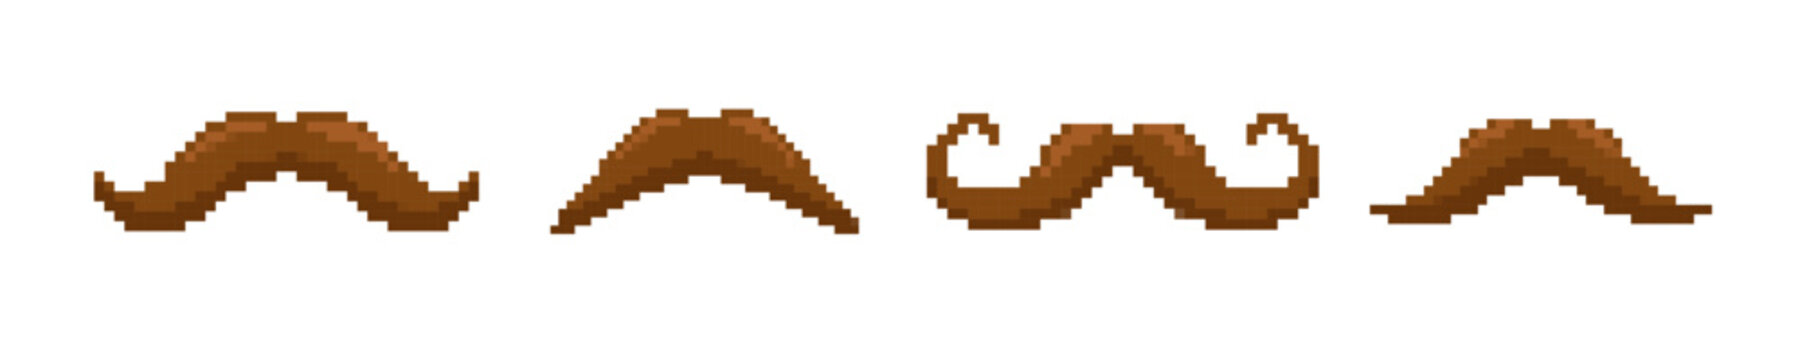 Pixel mustache vector man retro icon. 8 bit moustache vintage accessory